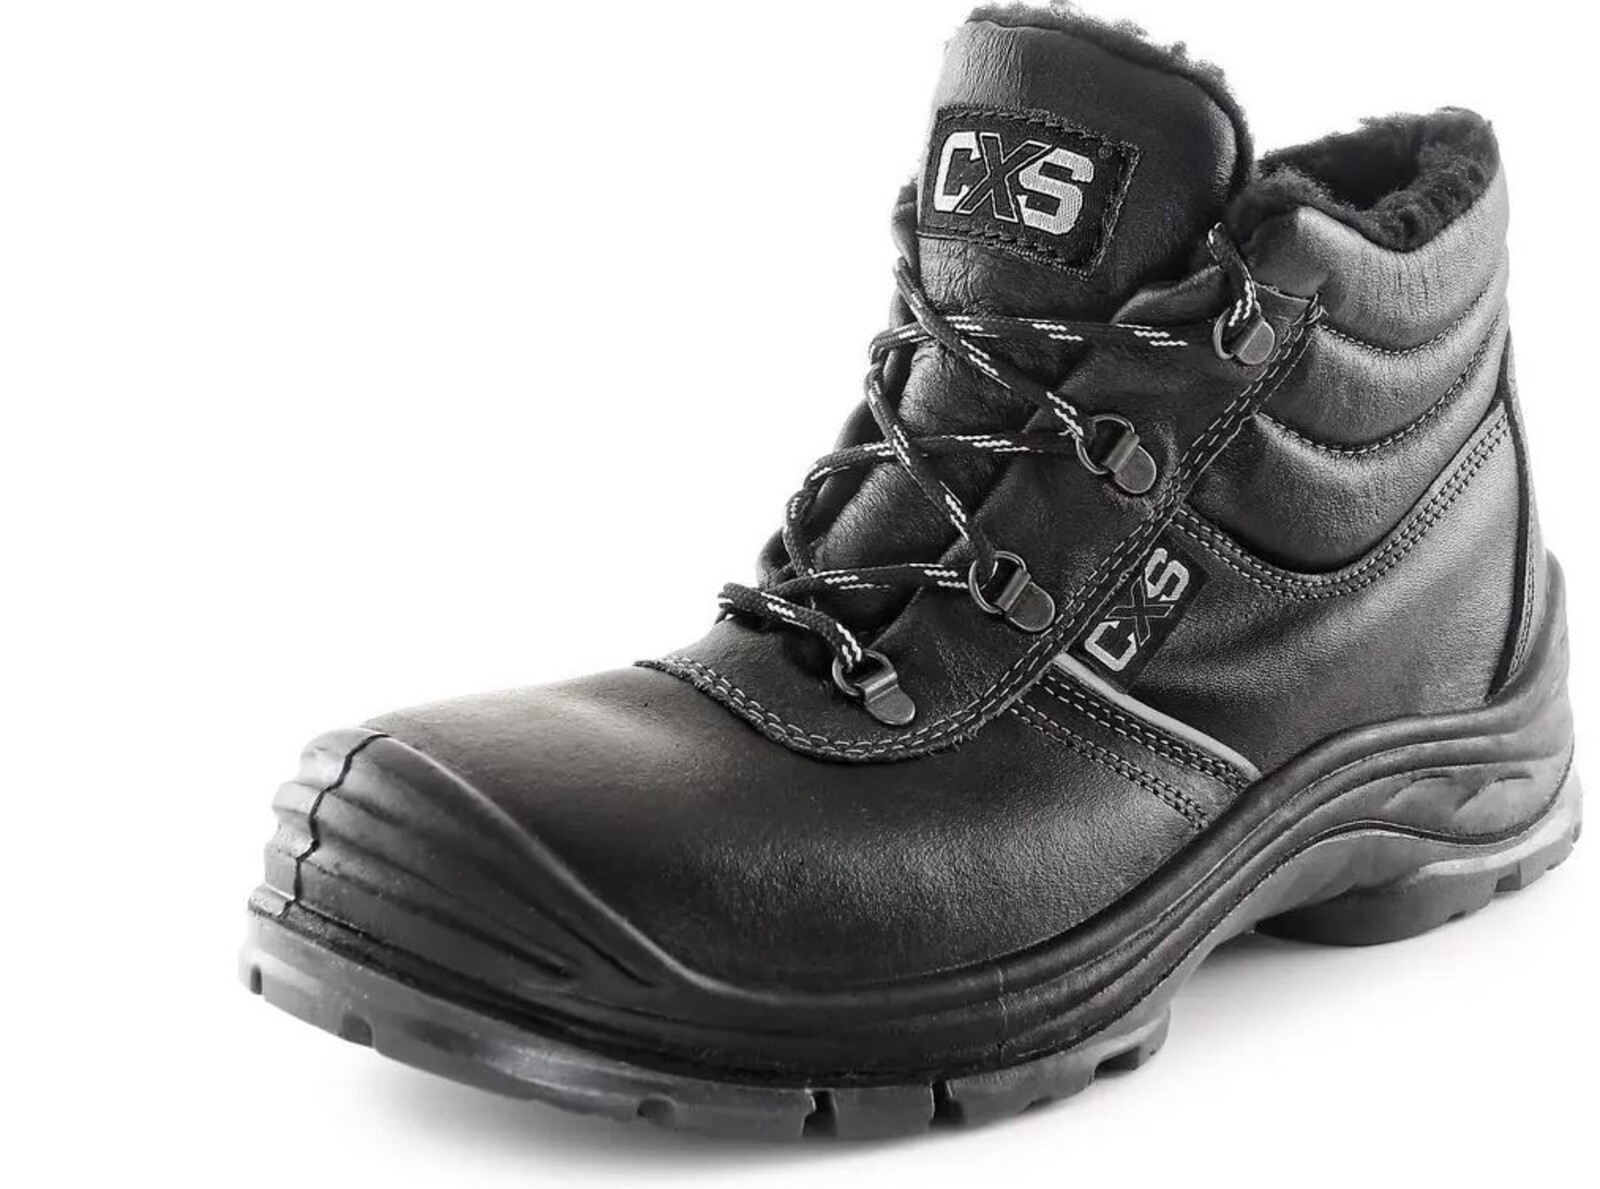 Zimná bezpečnostná členková obuv CXS Safety Steel Nickel S3 - veľkosť: 41, farba: čierna